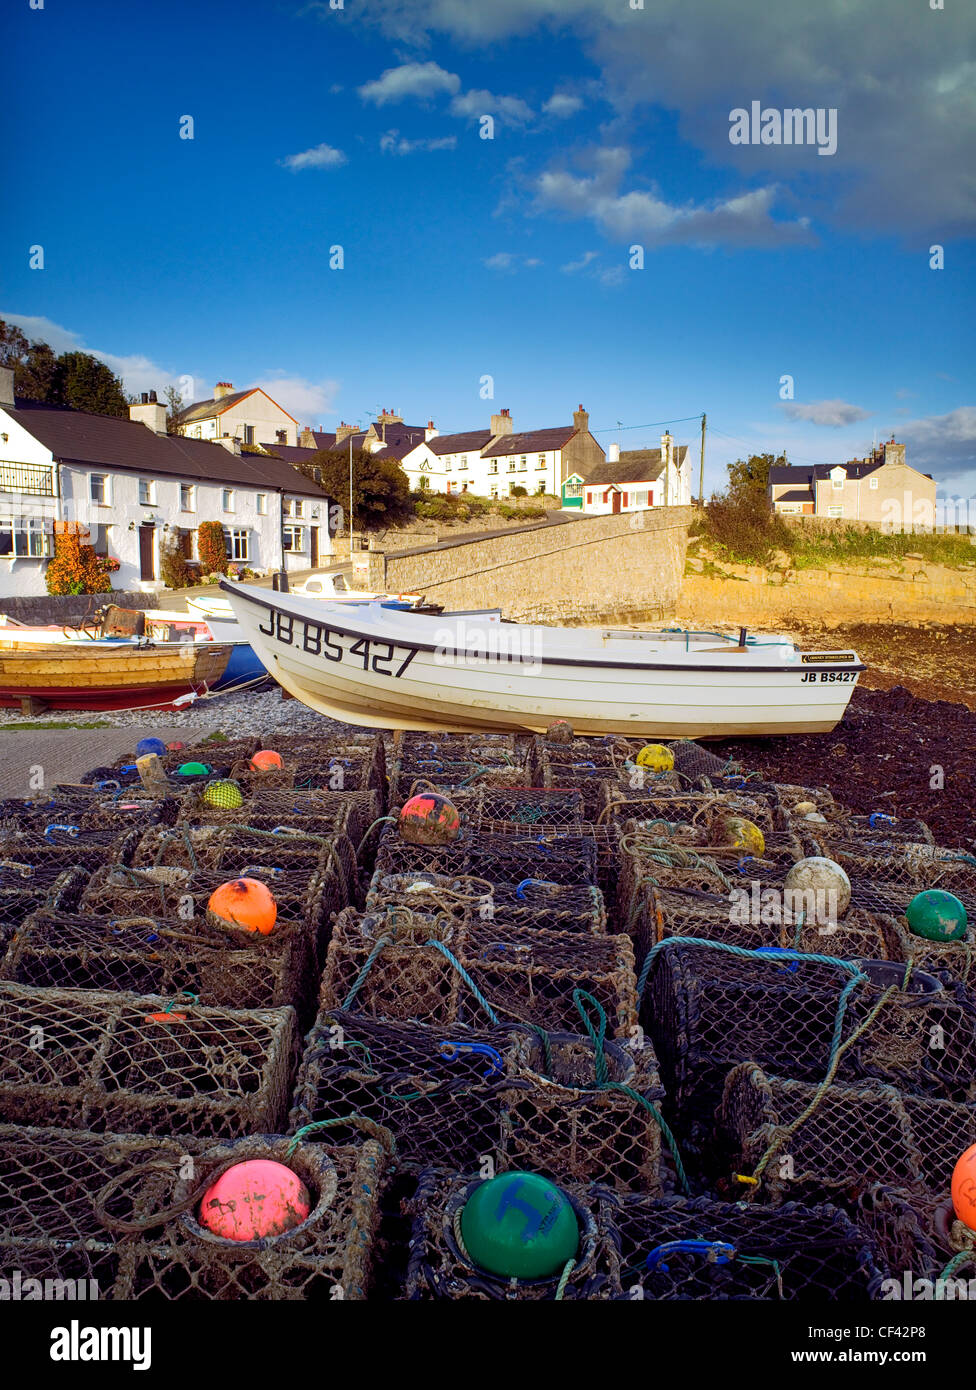 Reti di aragosta nel porto del piccolo villaggio di pescatori di Moelfre. Foto Stock